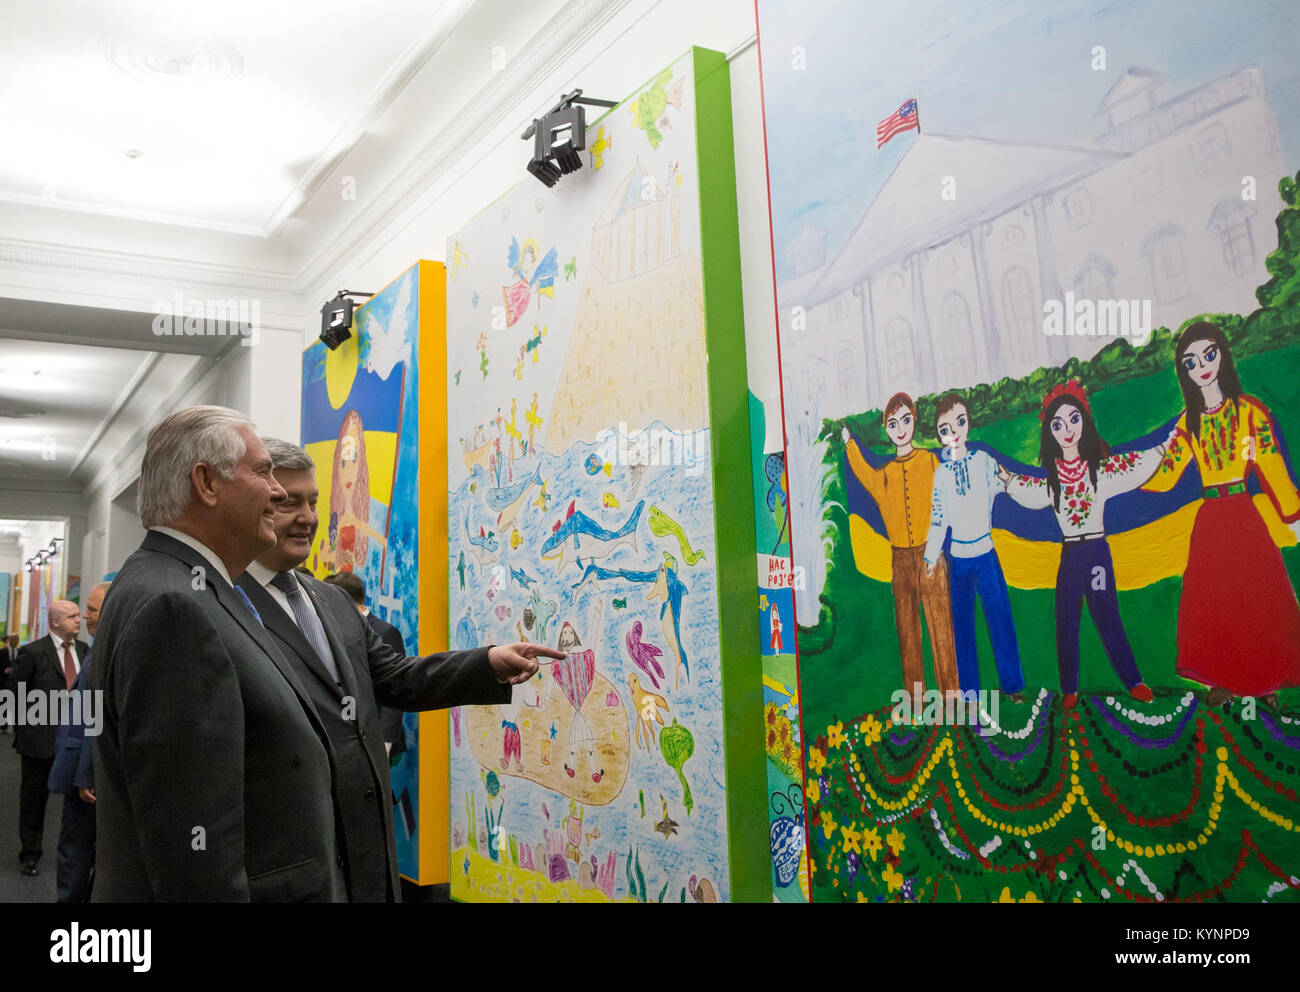 La secrétaire d'État des États-Unis, Rex Tillerson admire l'exposition "mon drapeau va où je vais" peintures éclatantes par les enfants ukrainiens qui vivent dans le monde, le 9 juillet 2017 à Kiev, Ukraine. Tillerson secrétaire admire peintures d'enfants ukrainiens 35689044551 o Banque D'Images